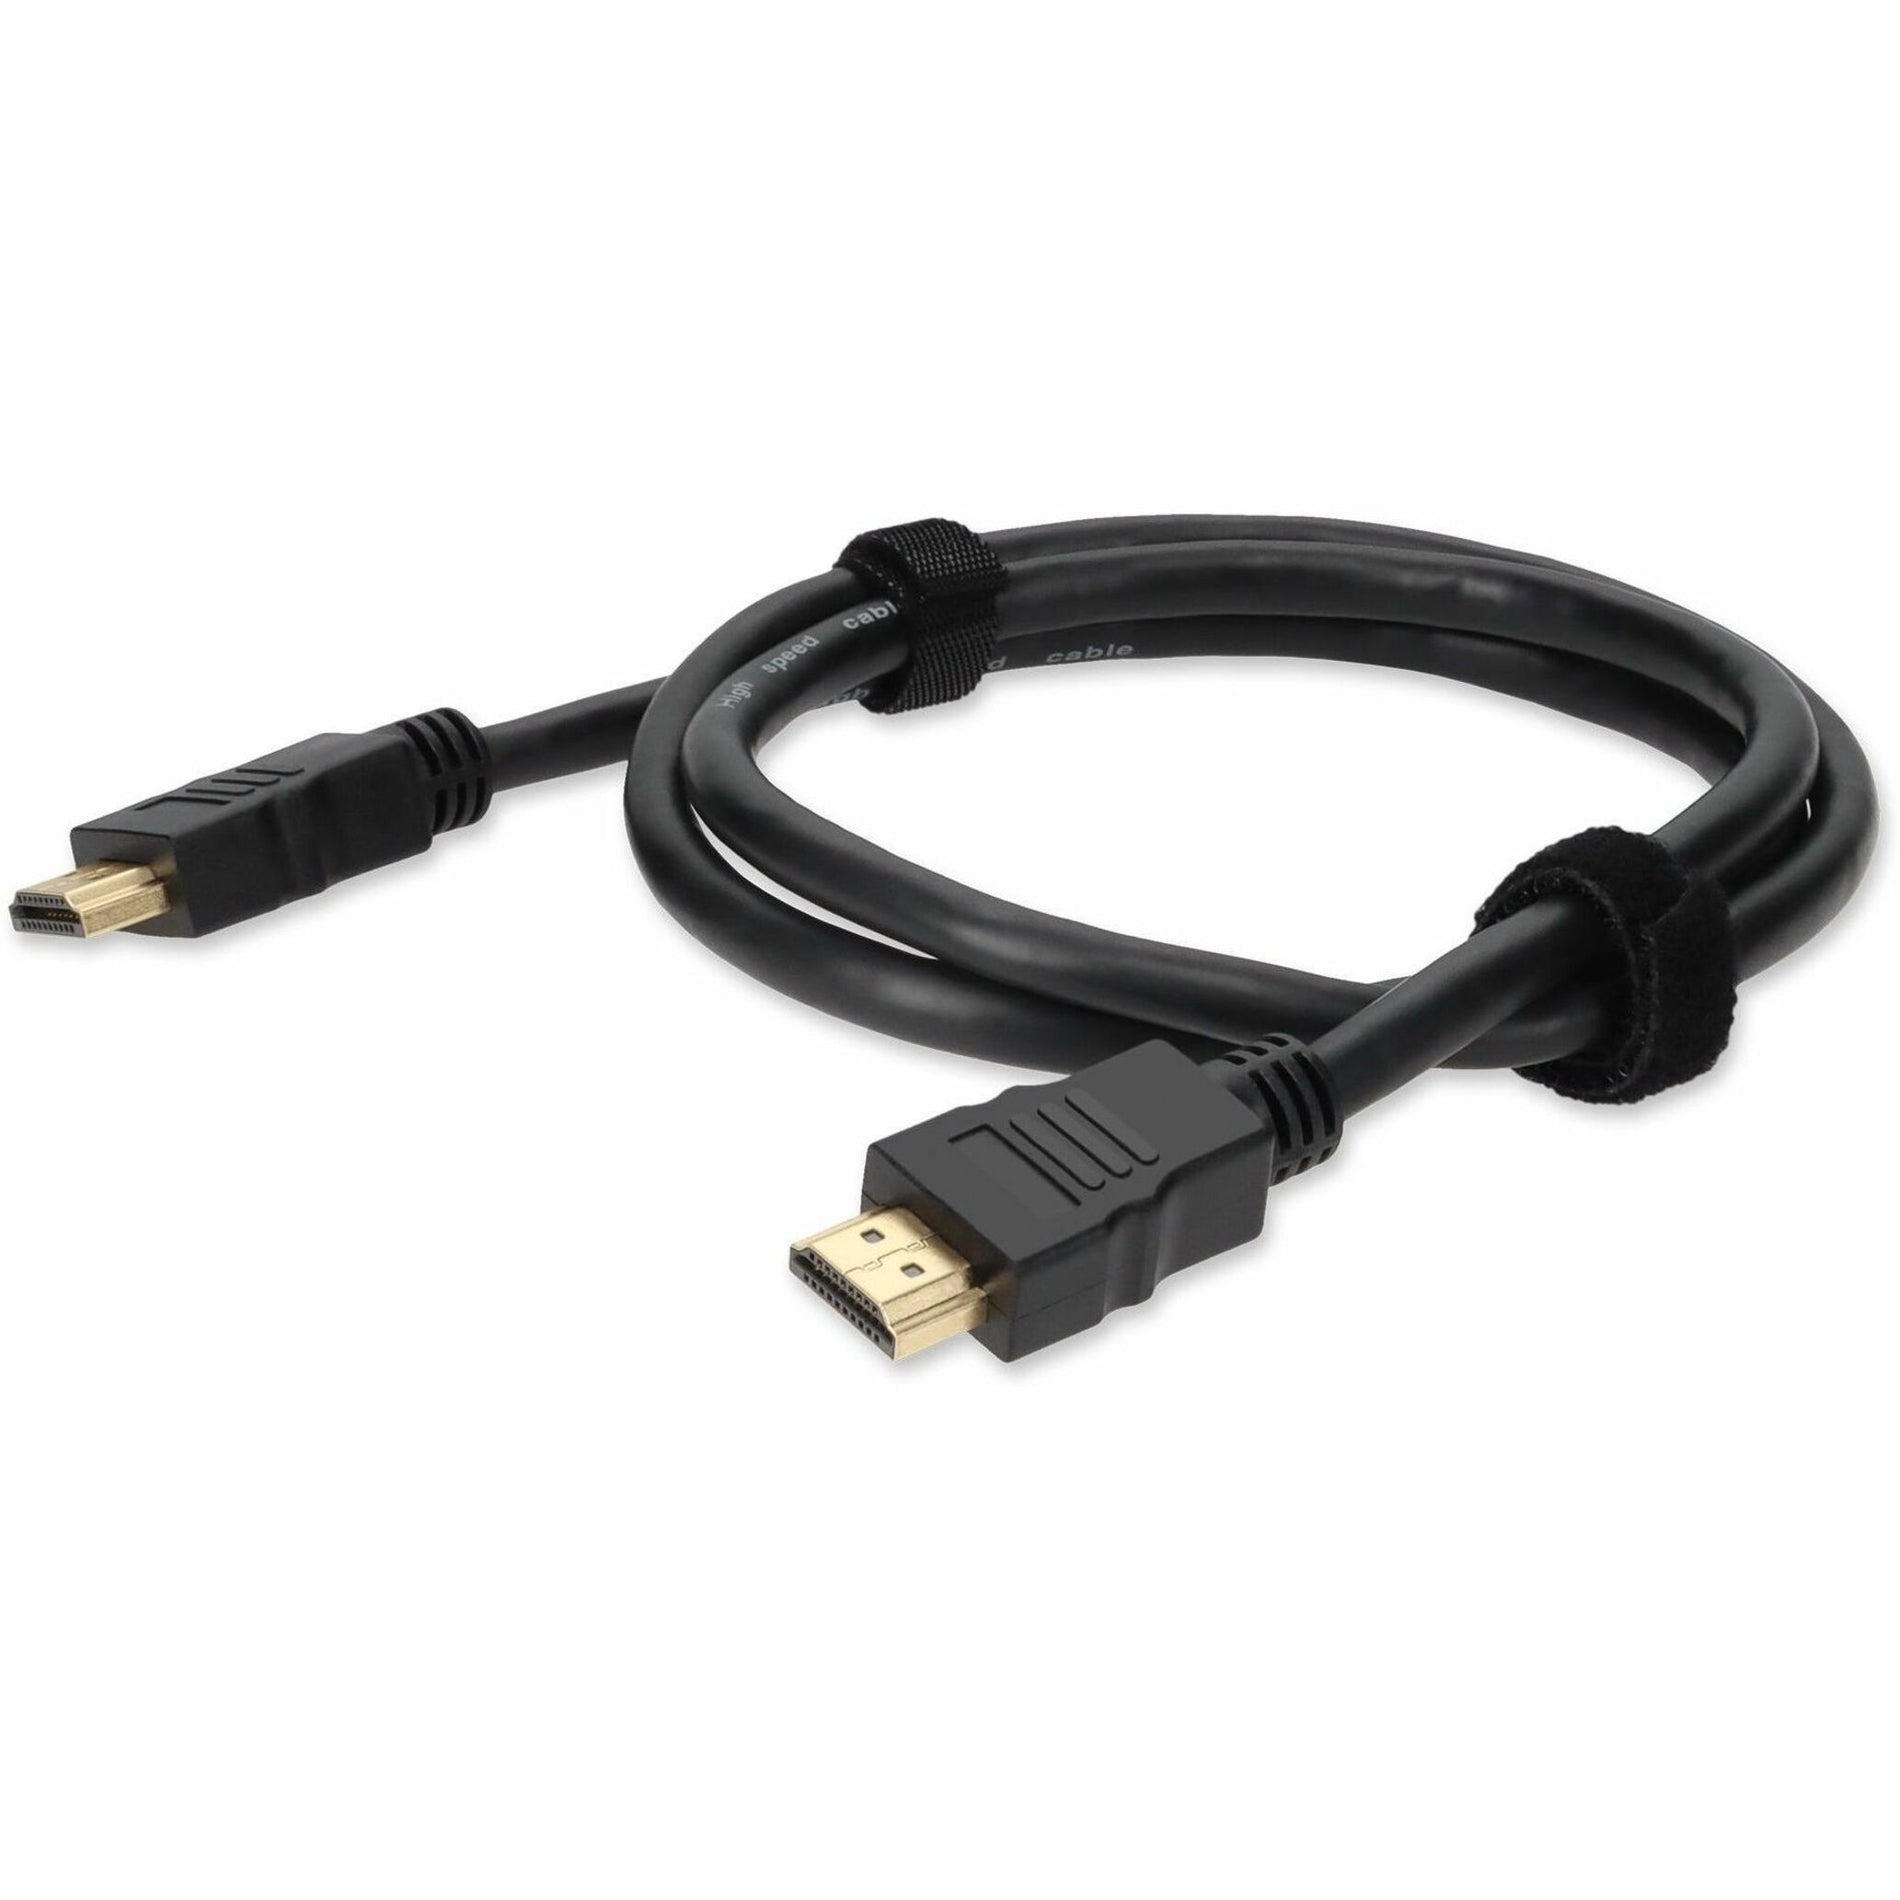 Añadir Paquete a granel de 5 cables HDMI de alta velocidad de 3 pies HDMIHSMM3-5PK HDMI 1.4 con Ethernet garantía de 3 años Estados Unidos. Marca: AddOn.